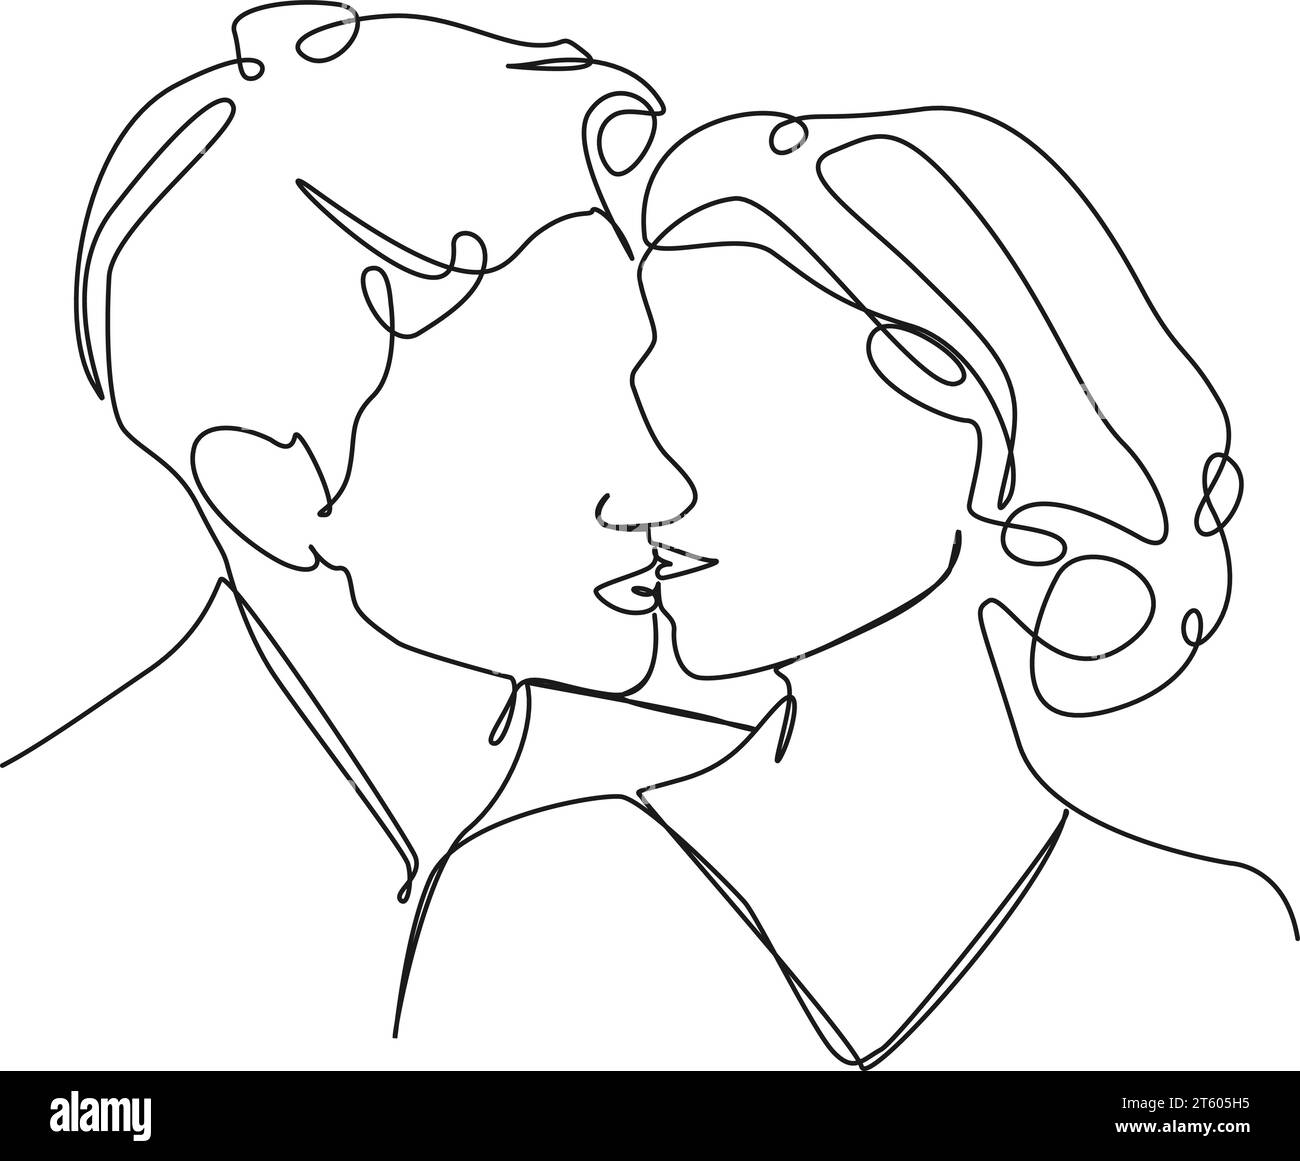 Kontinuierliche einzeilige Zeichnung von Paaren küssen, Linie Art Vektor Illustration Stock Vektor